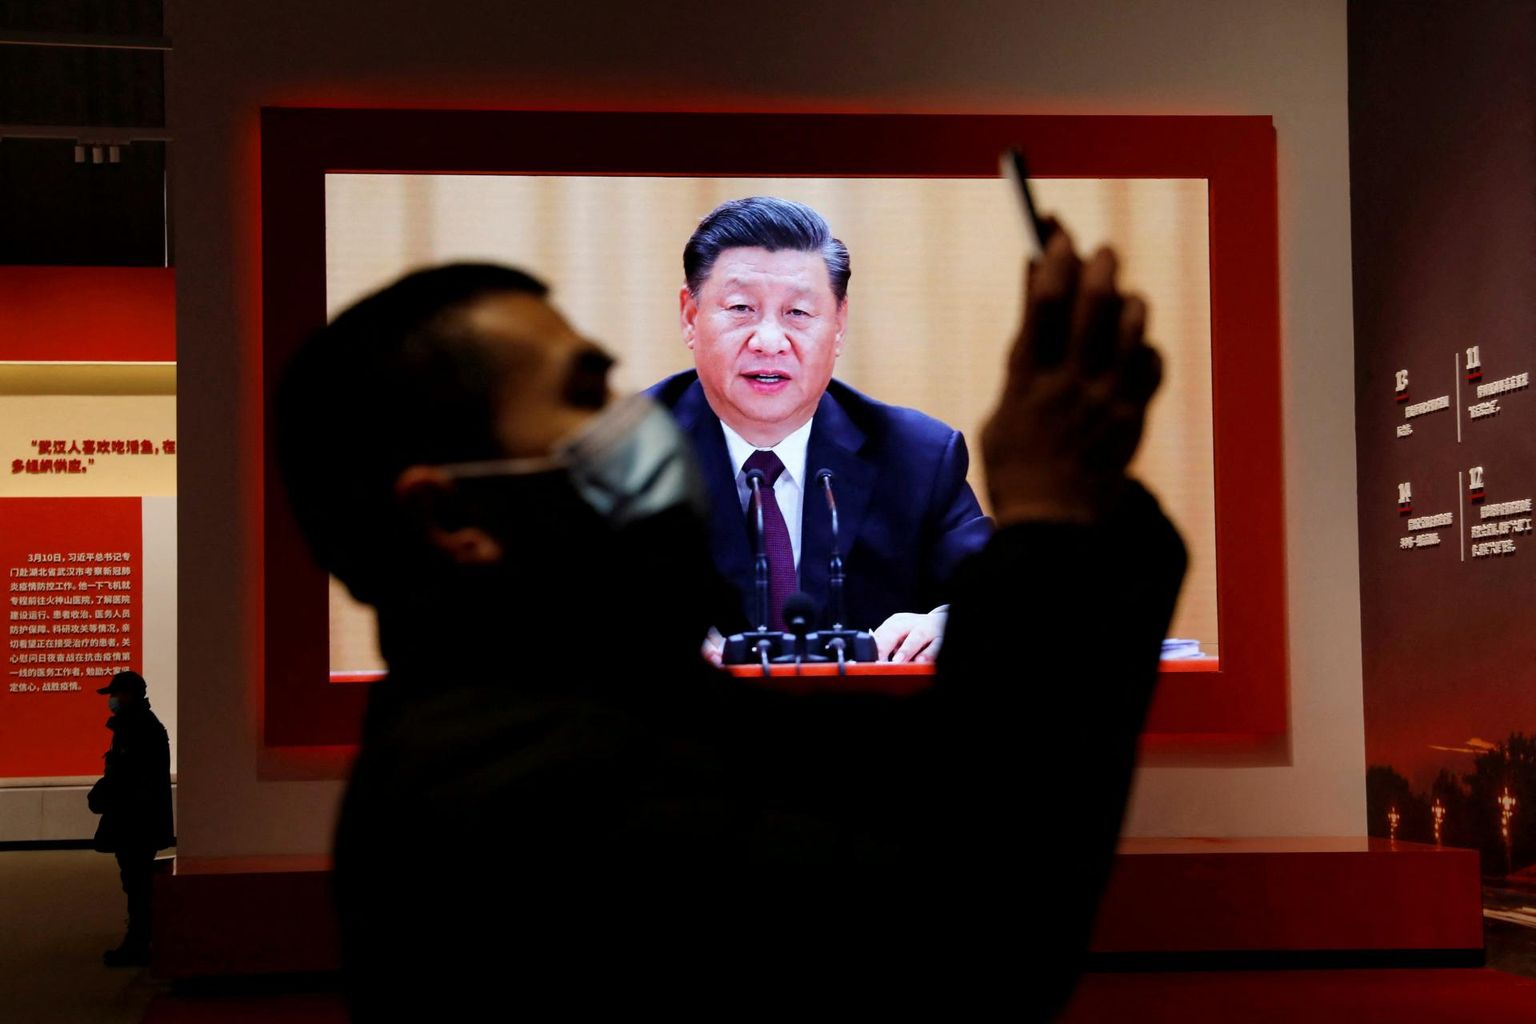 Hiina juht Xi on oma karmide koroonareeglitega hiinlaste hulgas rahulolematust kasvatanud. Pildil külastaja koroonapandeemia vastasele võitlusele pühendatud näitusel.